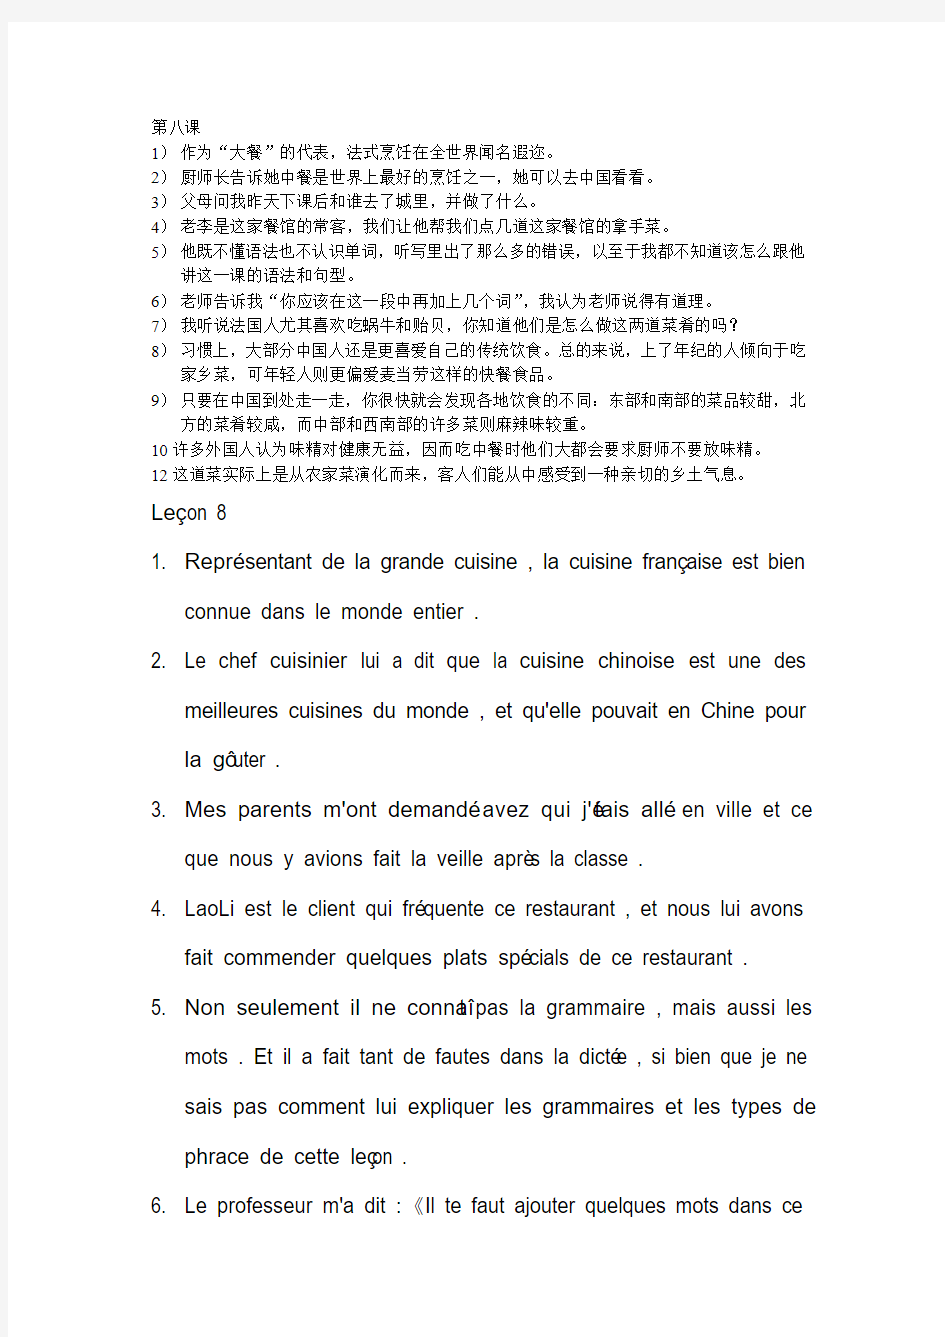 马晓宏法语修订版第二册课后习题句子的翻译 第八课和第十二课